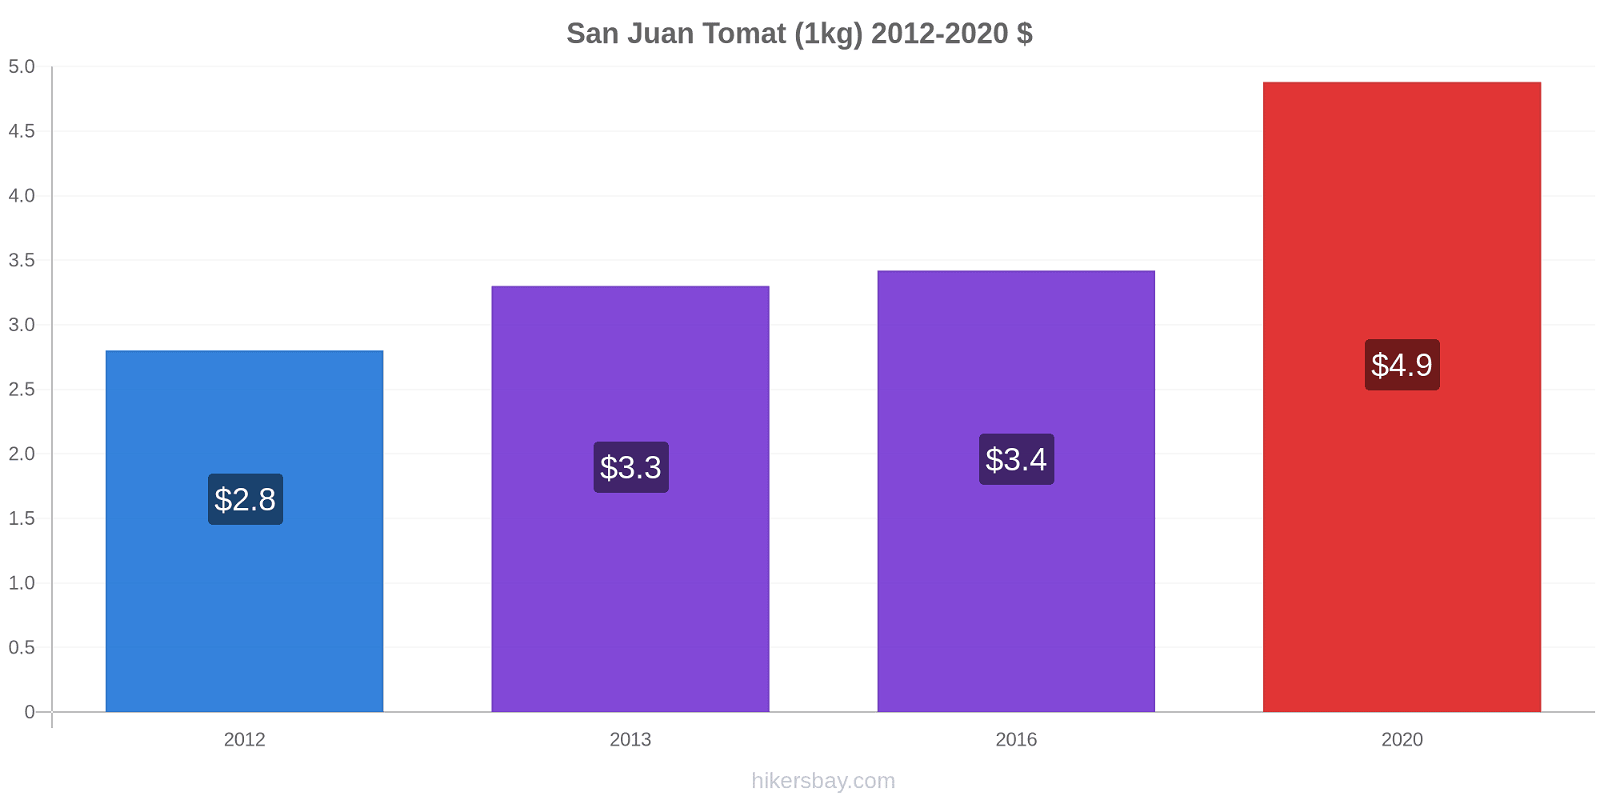 San Juan prisændringer Tomat (1kg) hikersbay.com